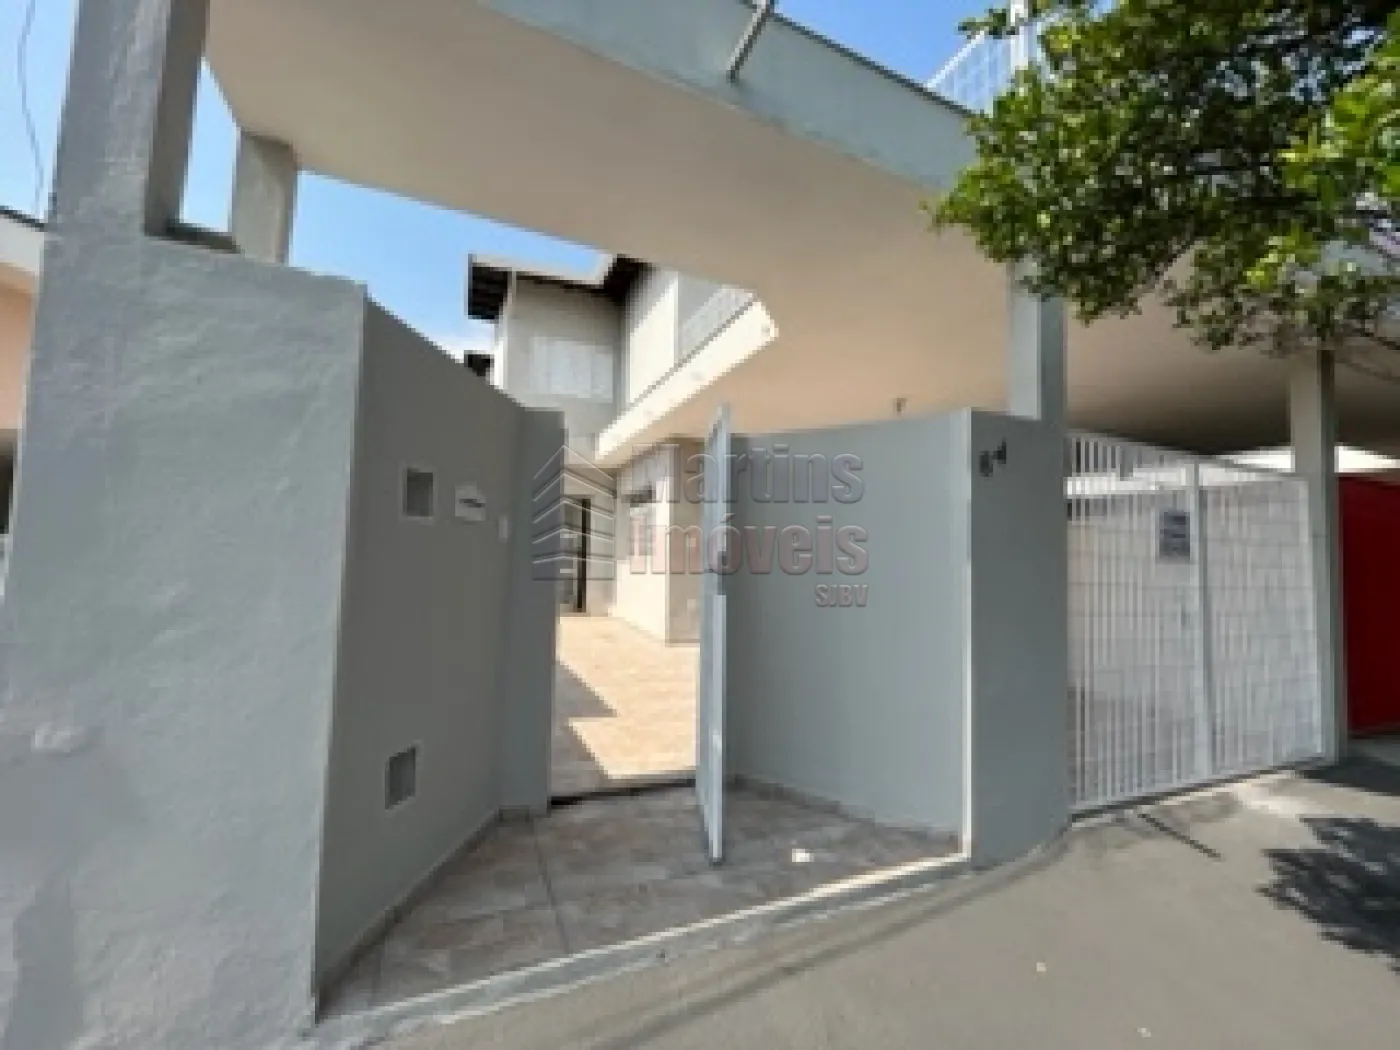 Comprar Casa / Padrão em São João da Boa Vista R$ 650.000,00 - Foto 1